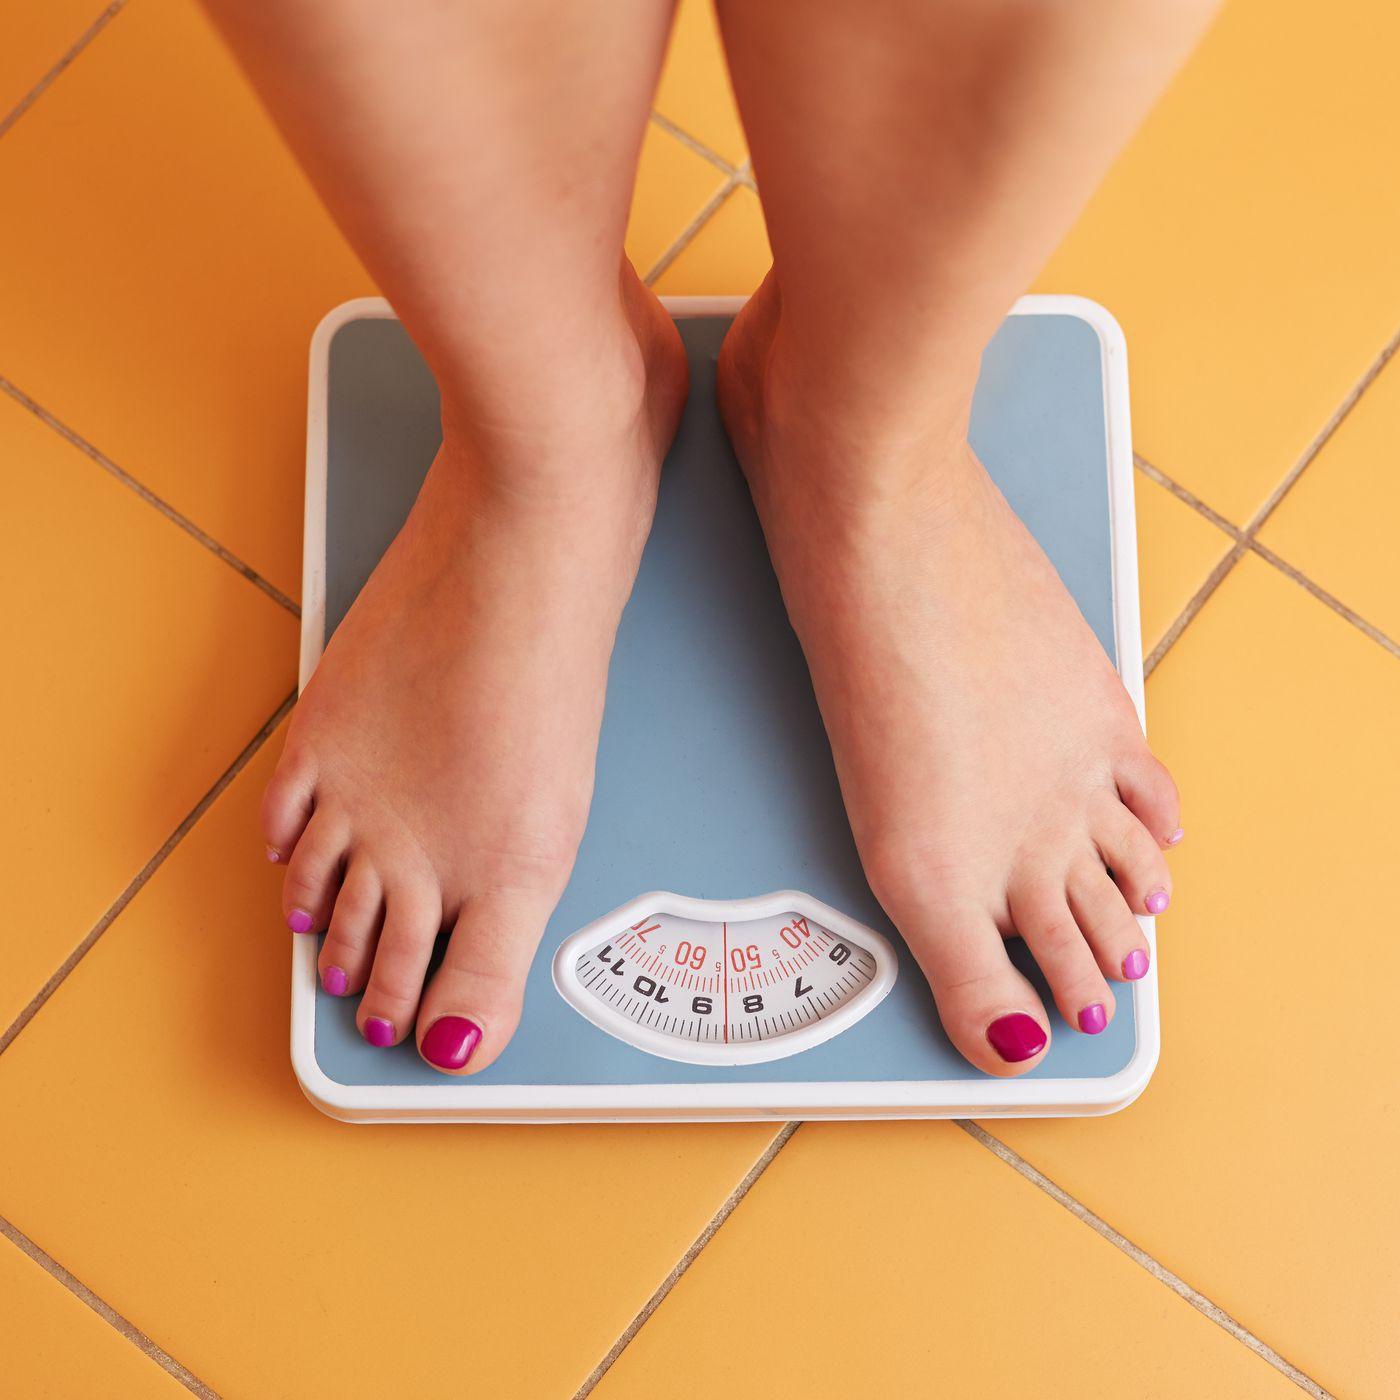 Chuyên gia dinh dưỡng: Đây là 5 mẹo giảm cân lành mạnh - ảnh 4